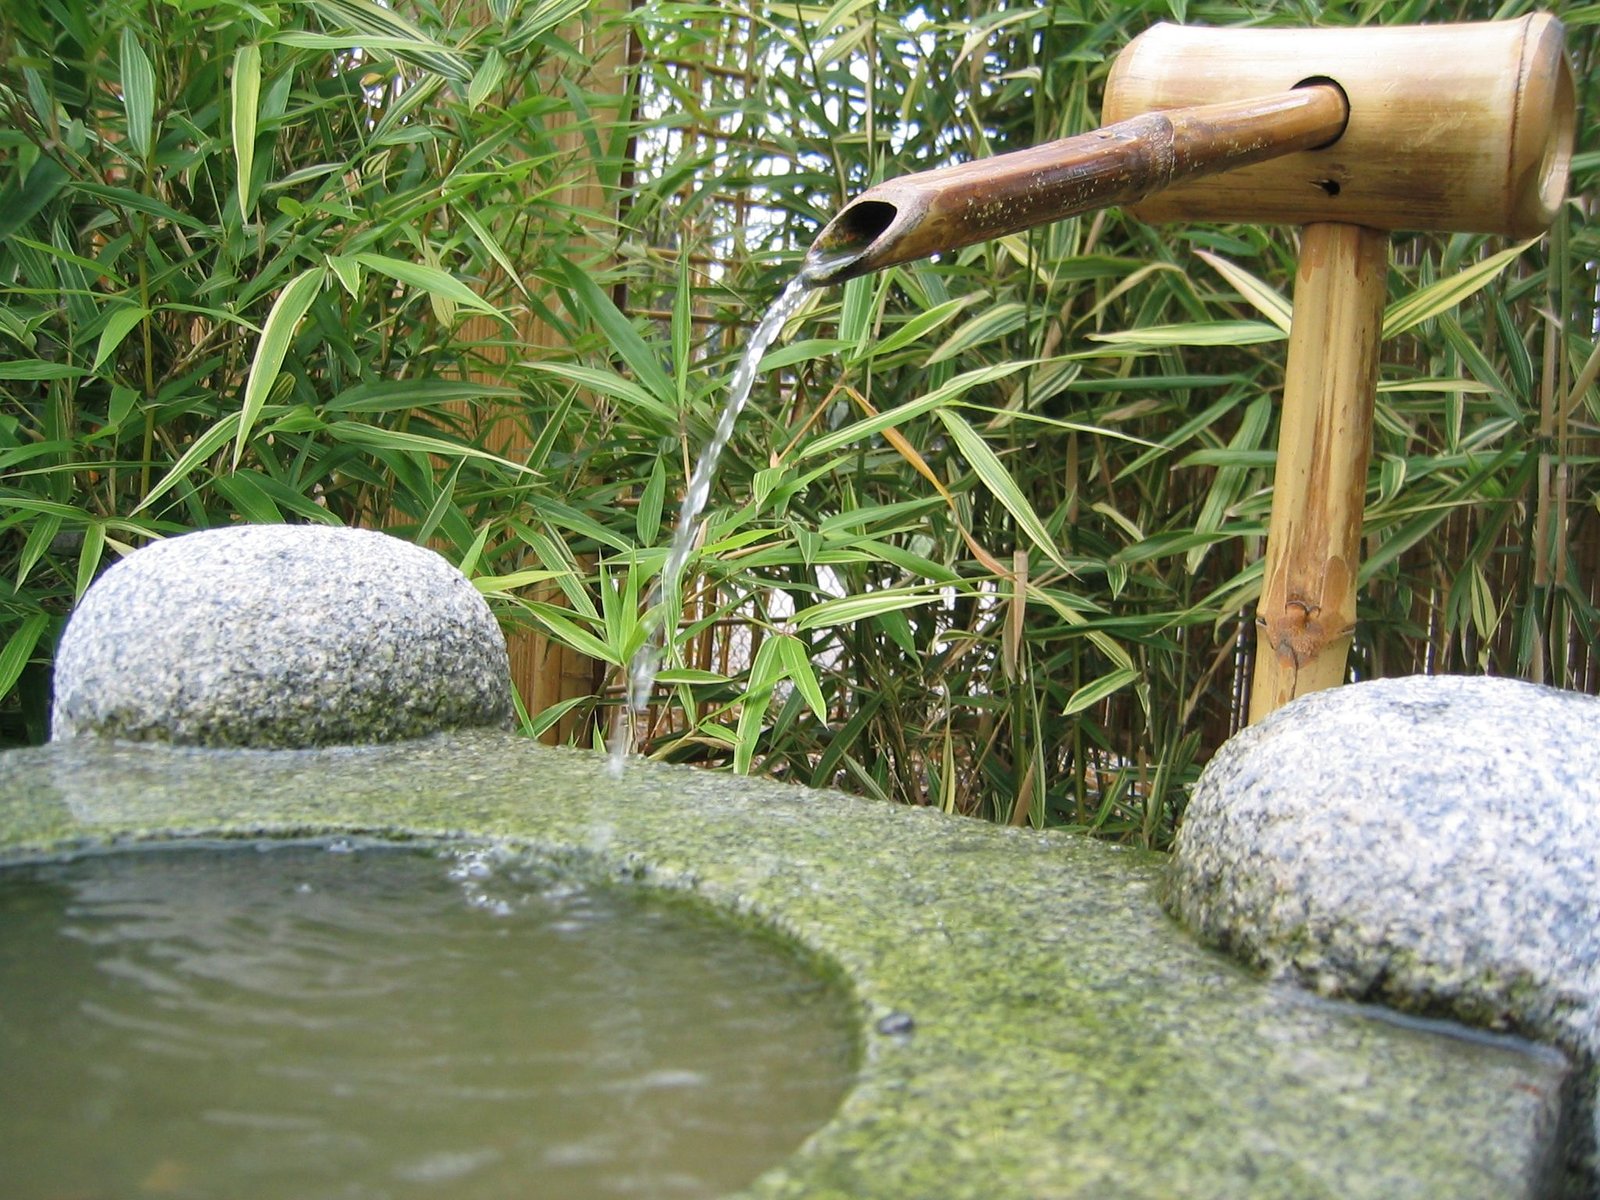 The Japanese garden a true work of art